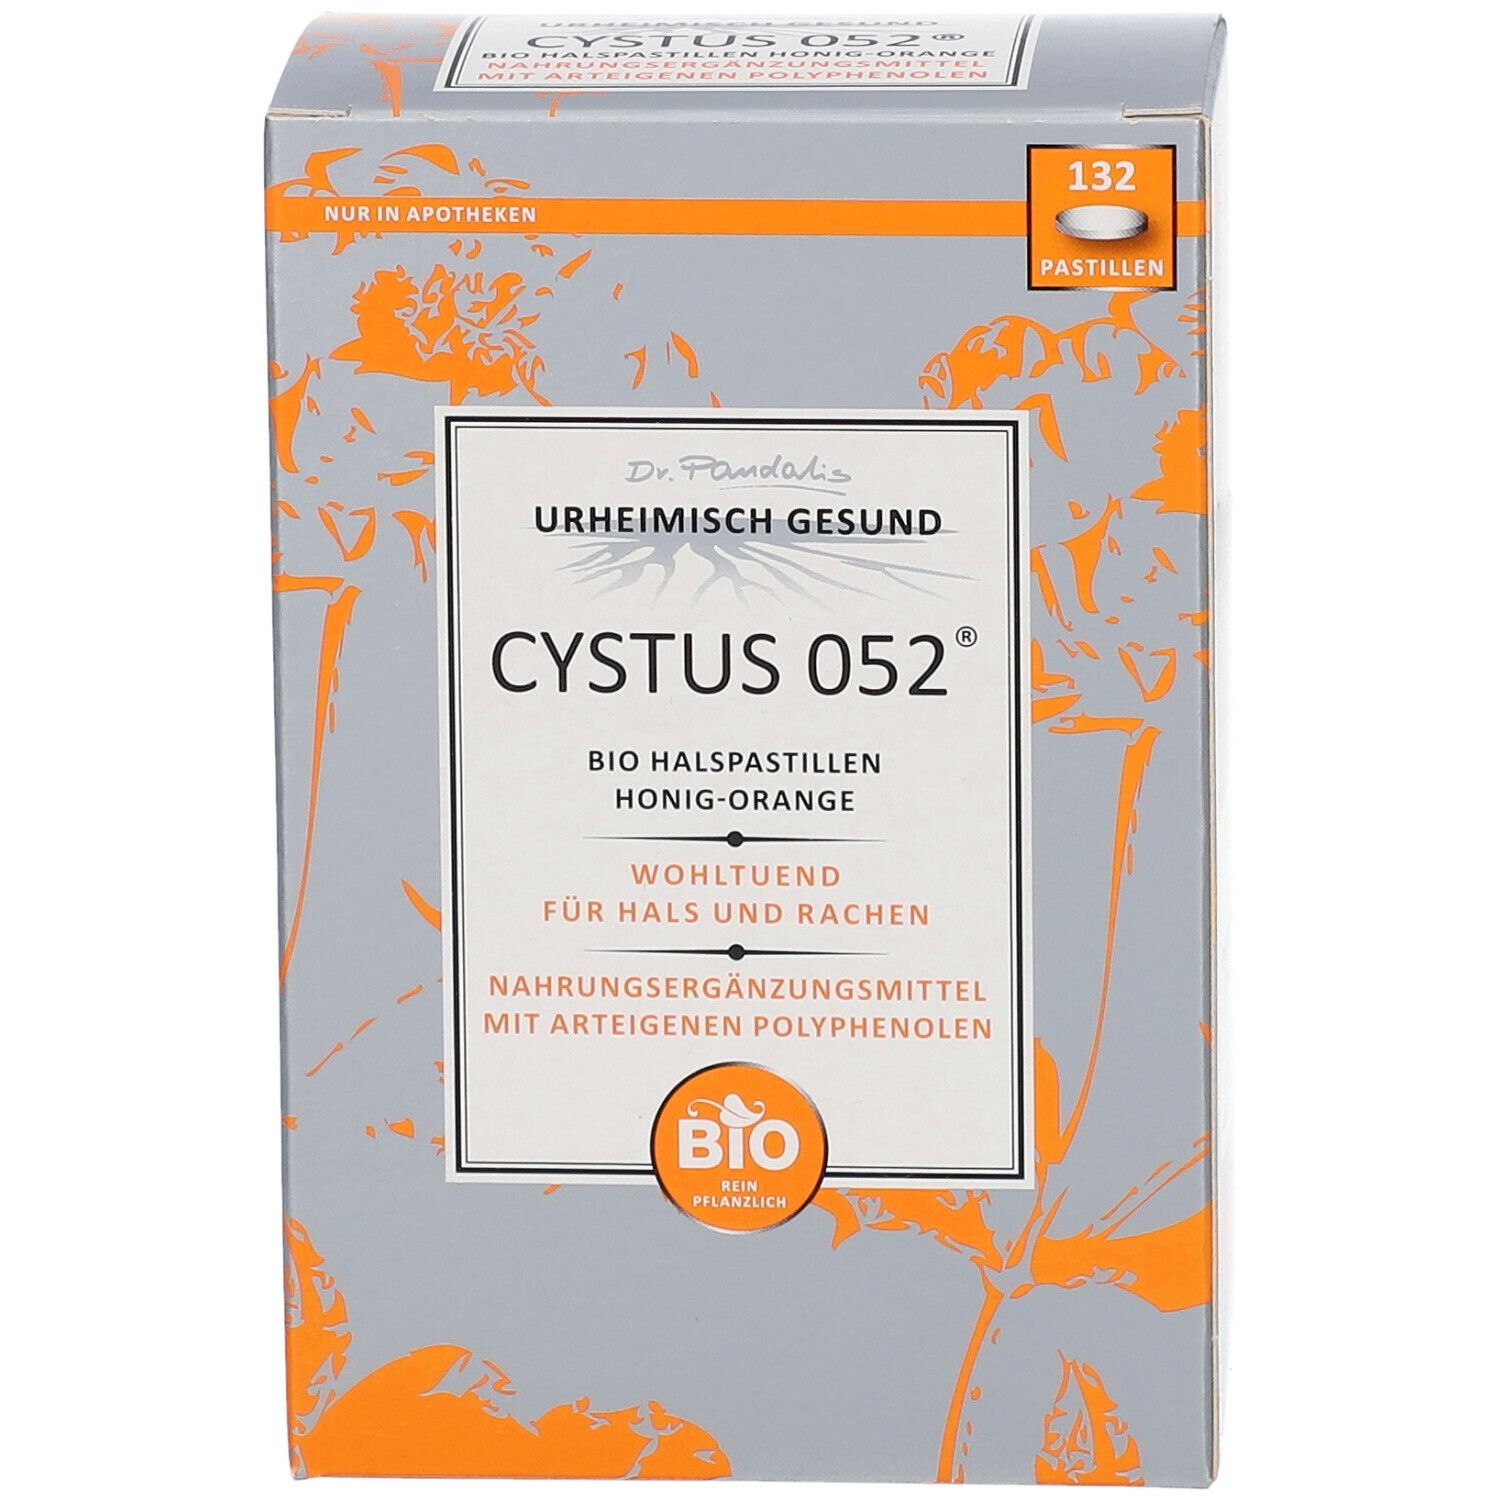 Dr. Pandalis Cystus 052® Bio Halspastillen – Honig-Orange